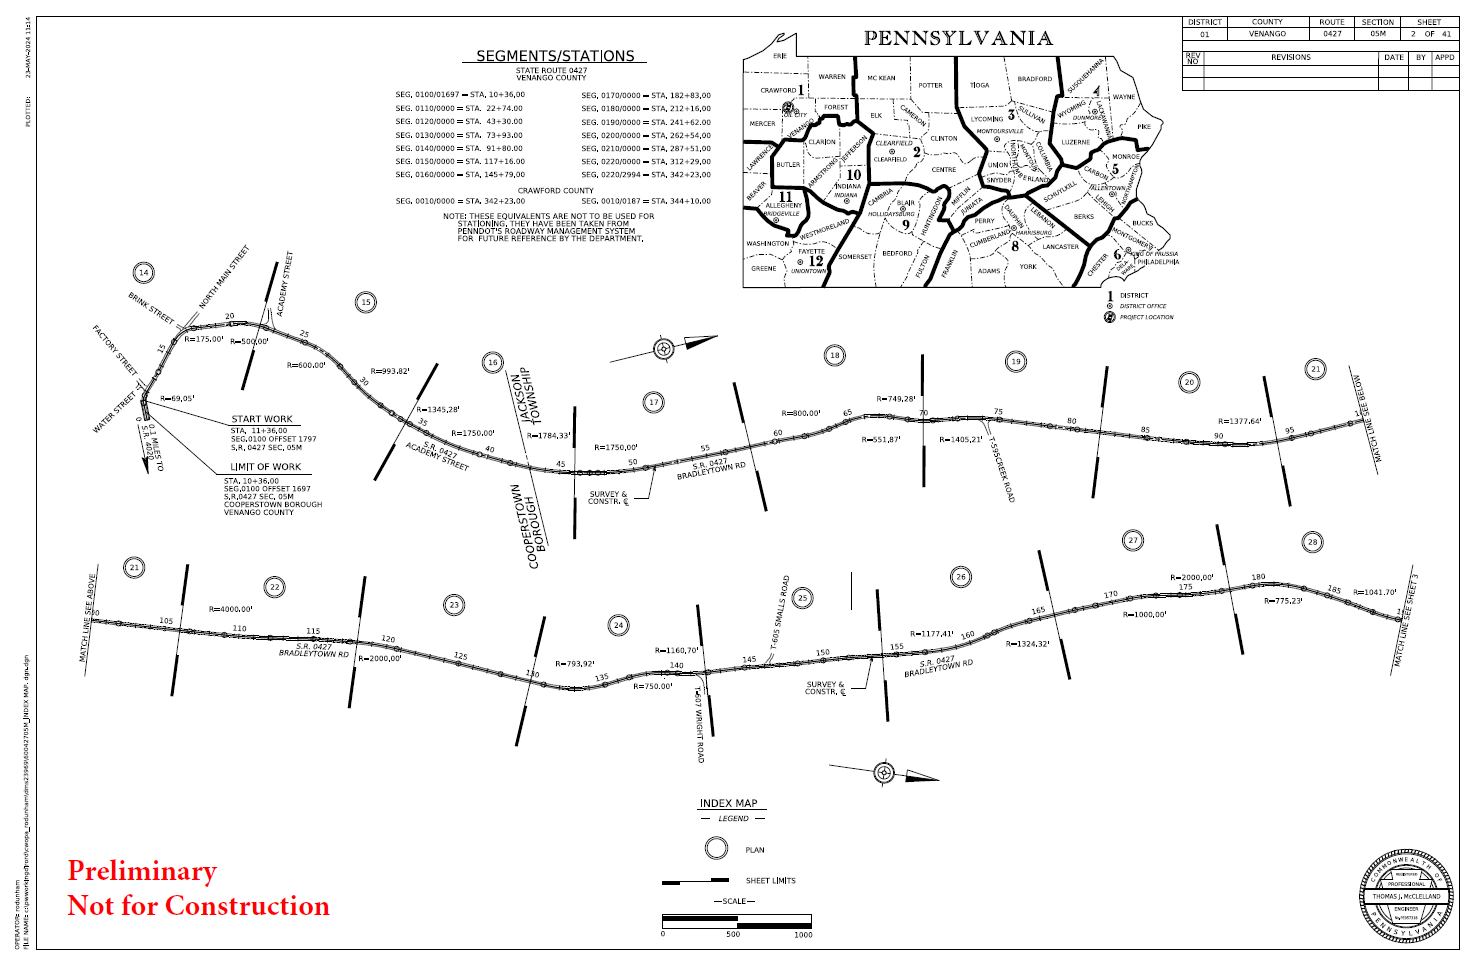 Venango Co Route 427 Project plans pic.png